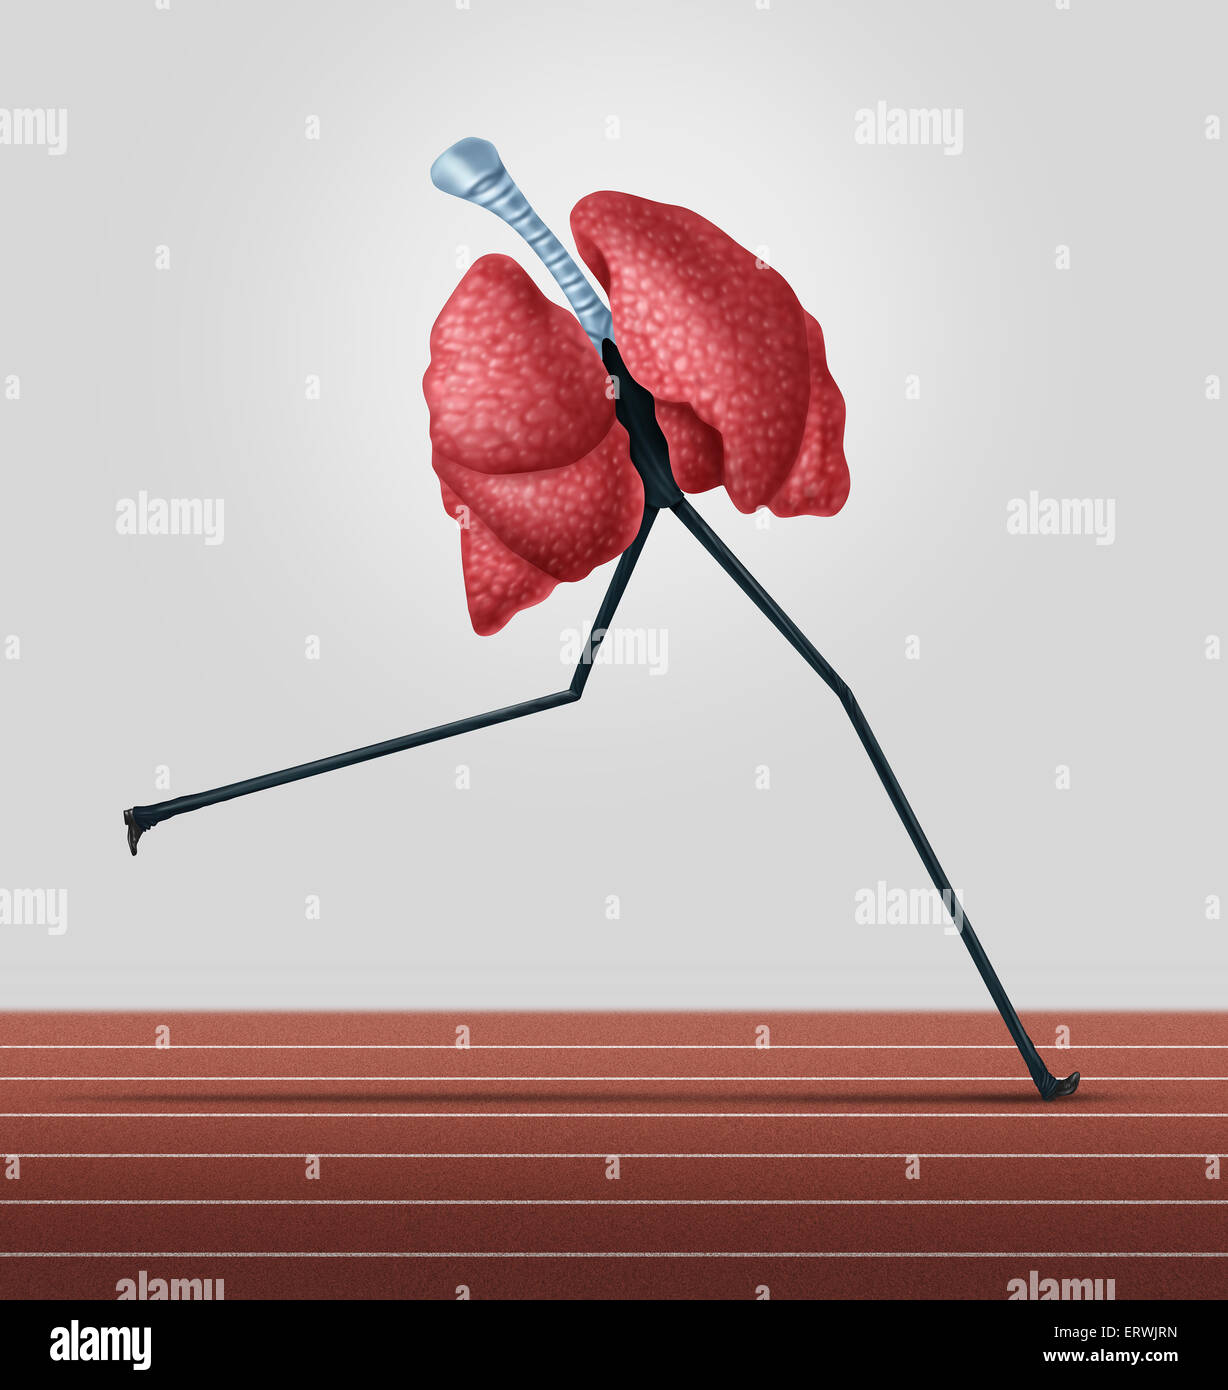 Gli esercizi cardiovascolari e di forma fisica concetto come polmoni umani con gambe in esecuzione su una pista come uno stile di vita sano e il simbolo di salute cardio metafora per vivere bene da jogging. Foto Stock